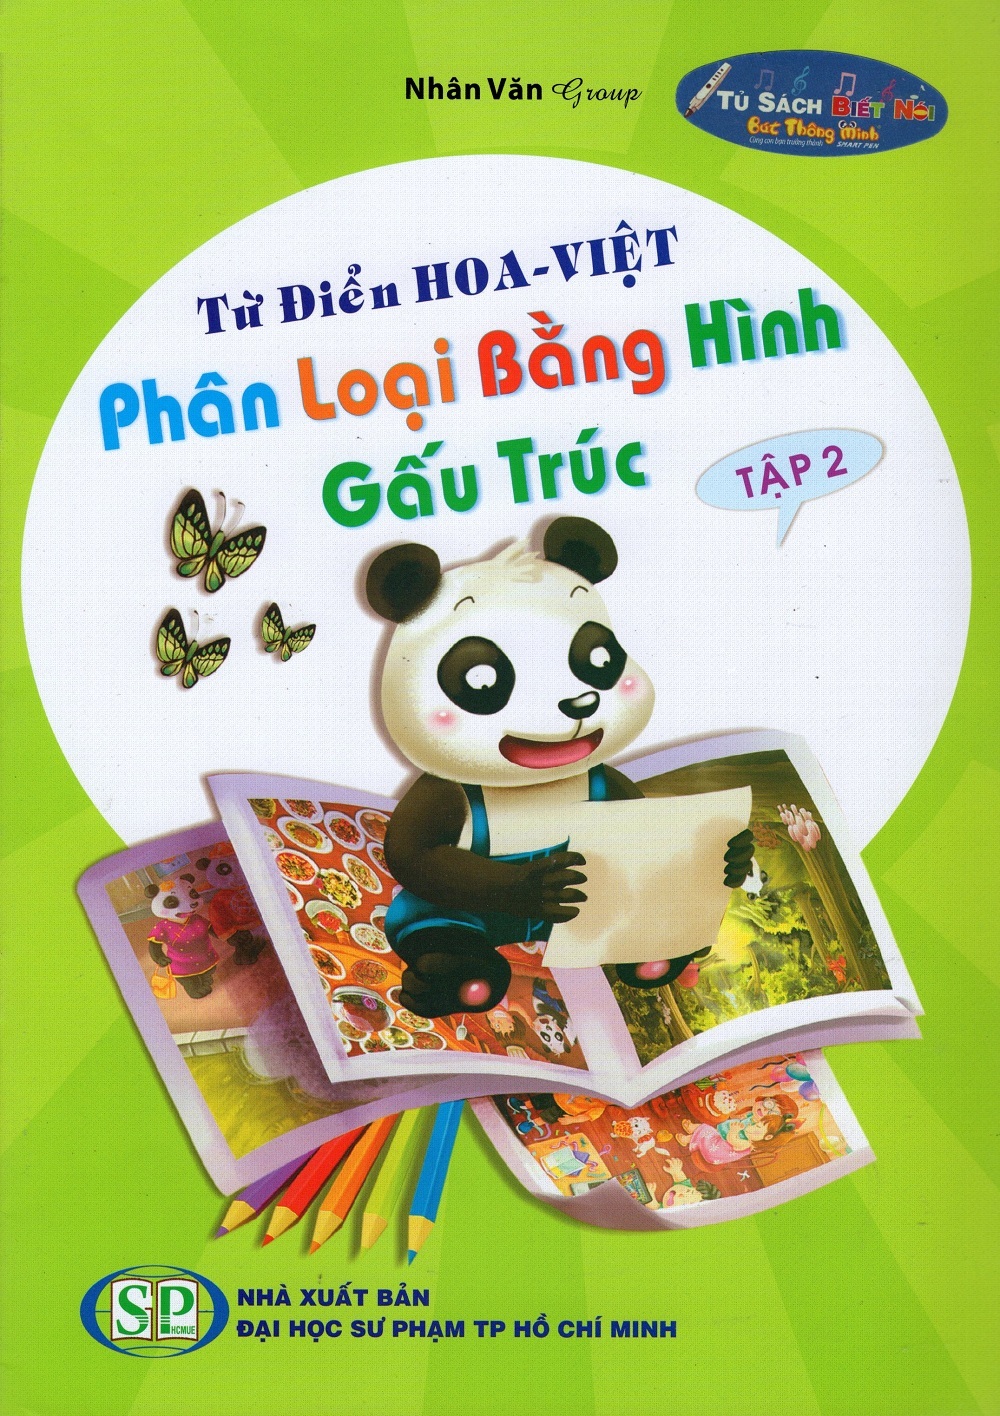 Từ Điển Hoa Việt - Phân Loại Bằng Hình - Gấu Trúc Tập 2